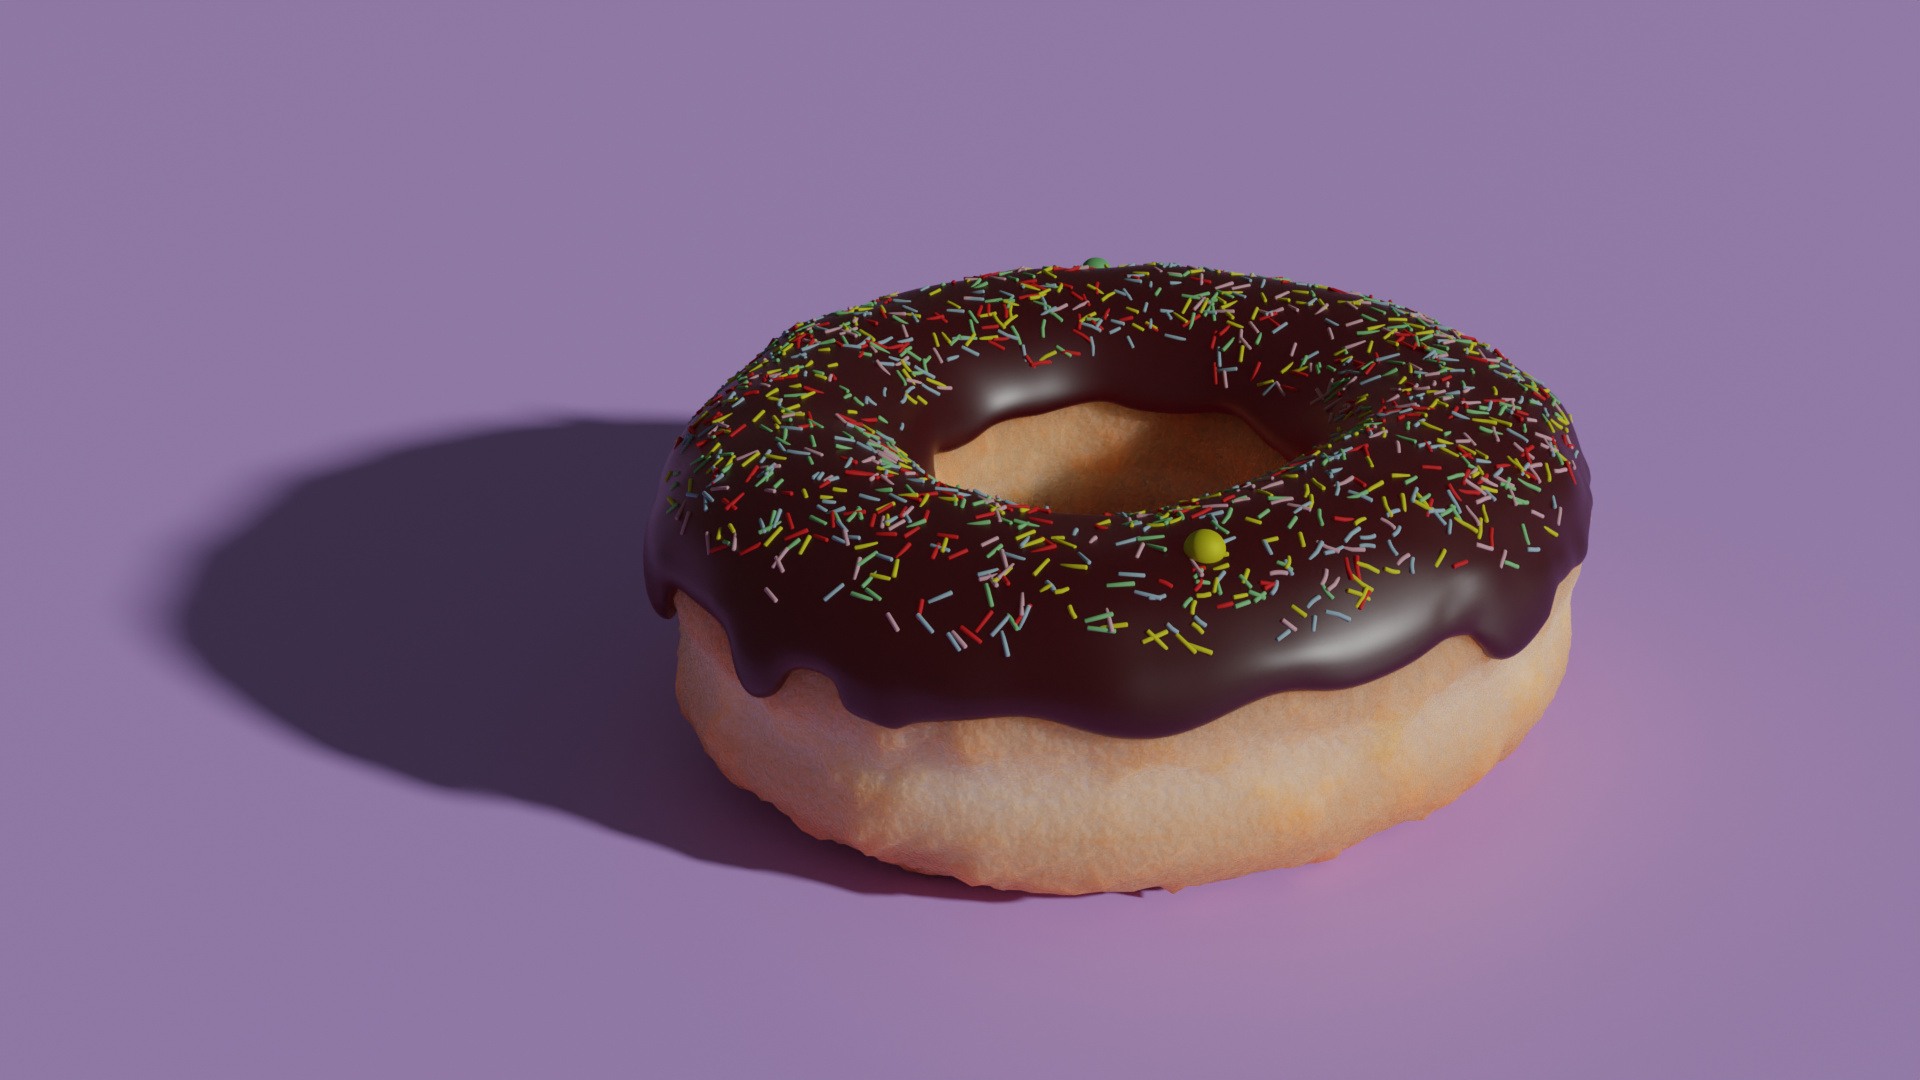 blender donut part 3